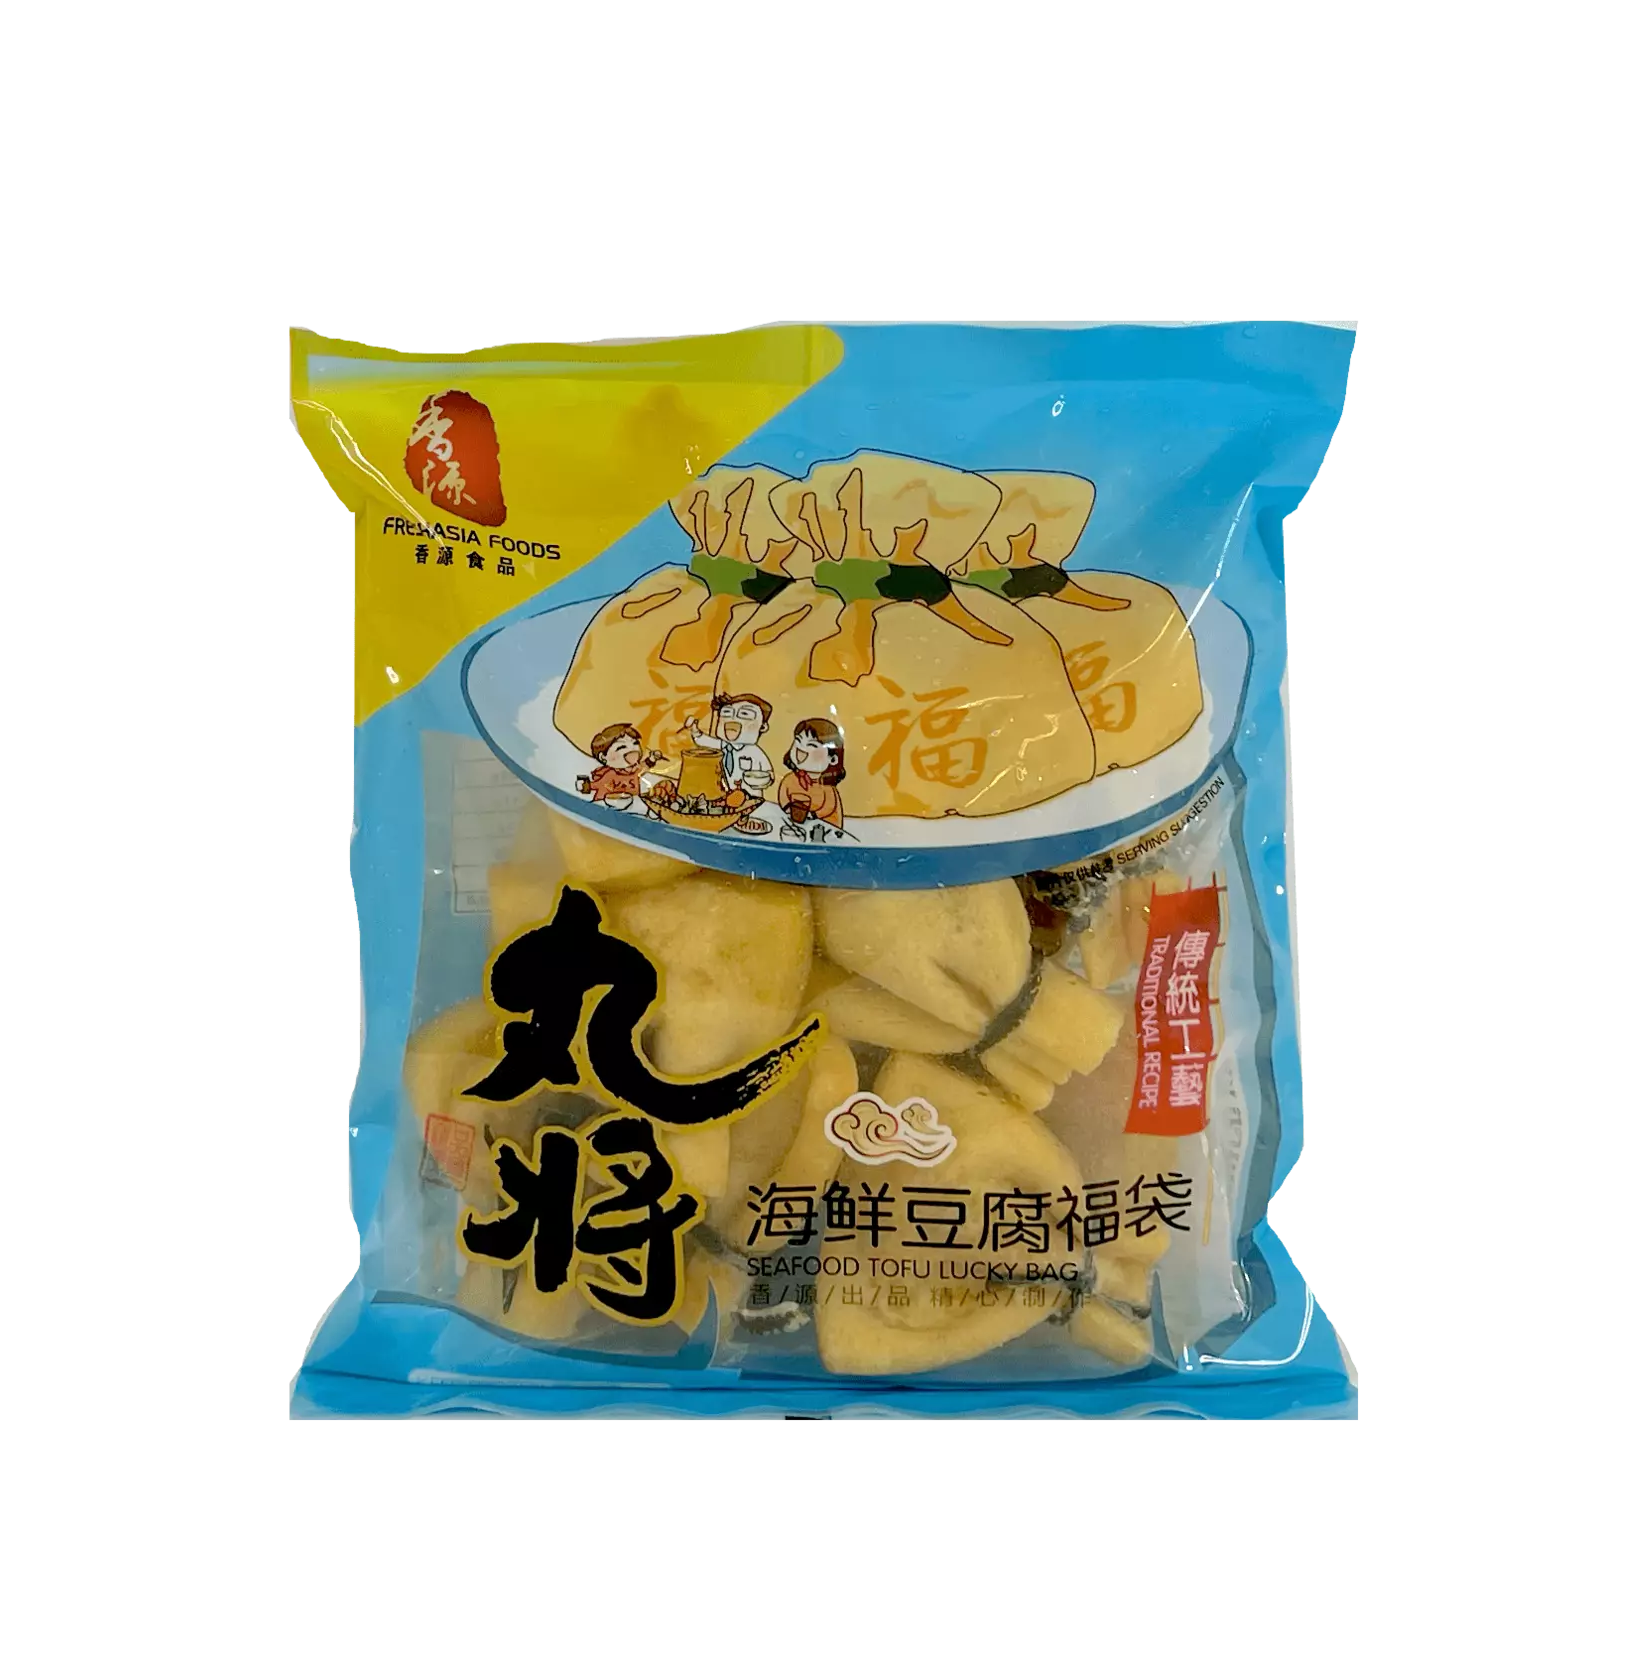 丸将 海鲜豆腐福袋 冷冻 200g 香源 中国